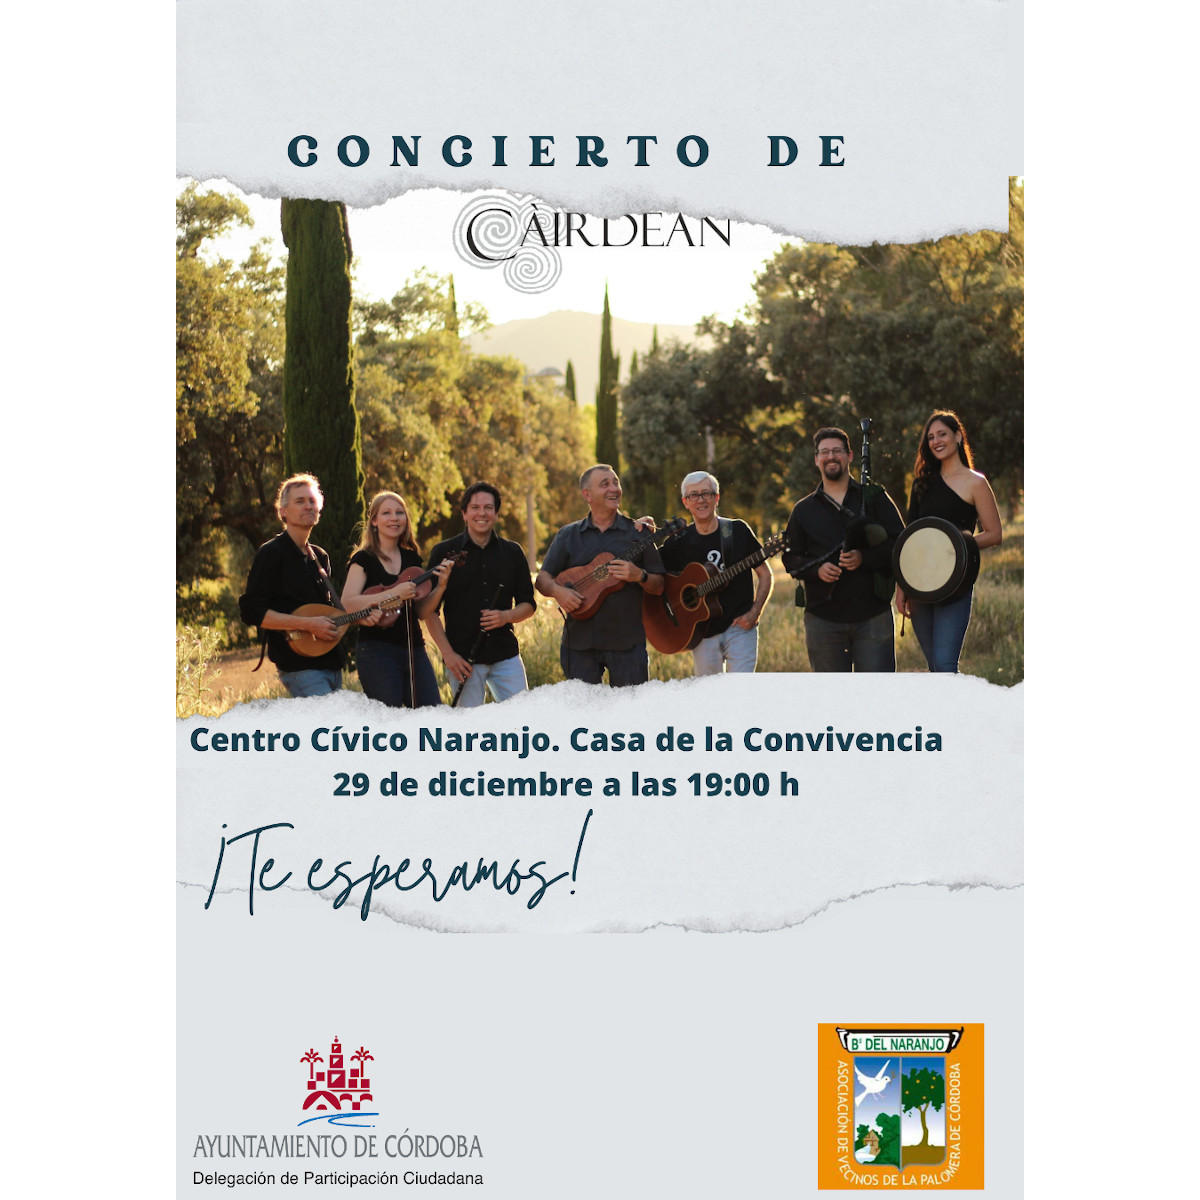 Concierto de Càirdean – Música Celta